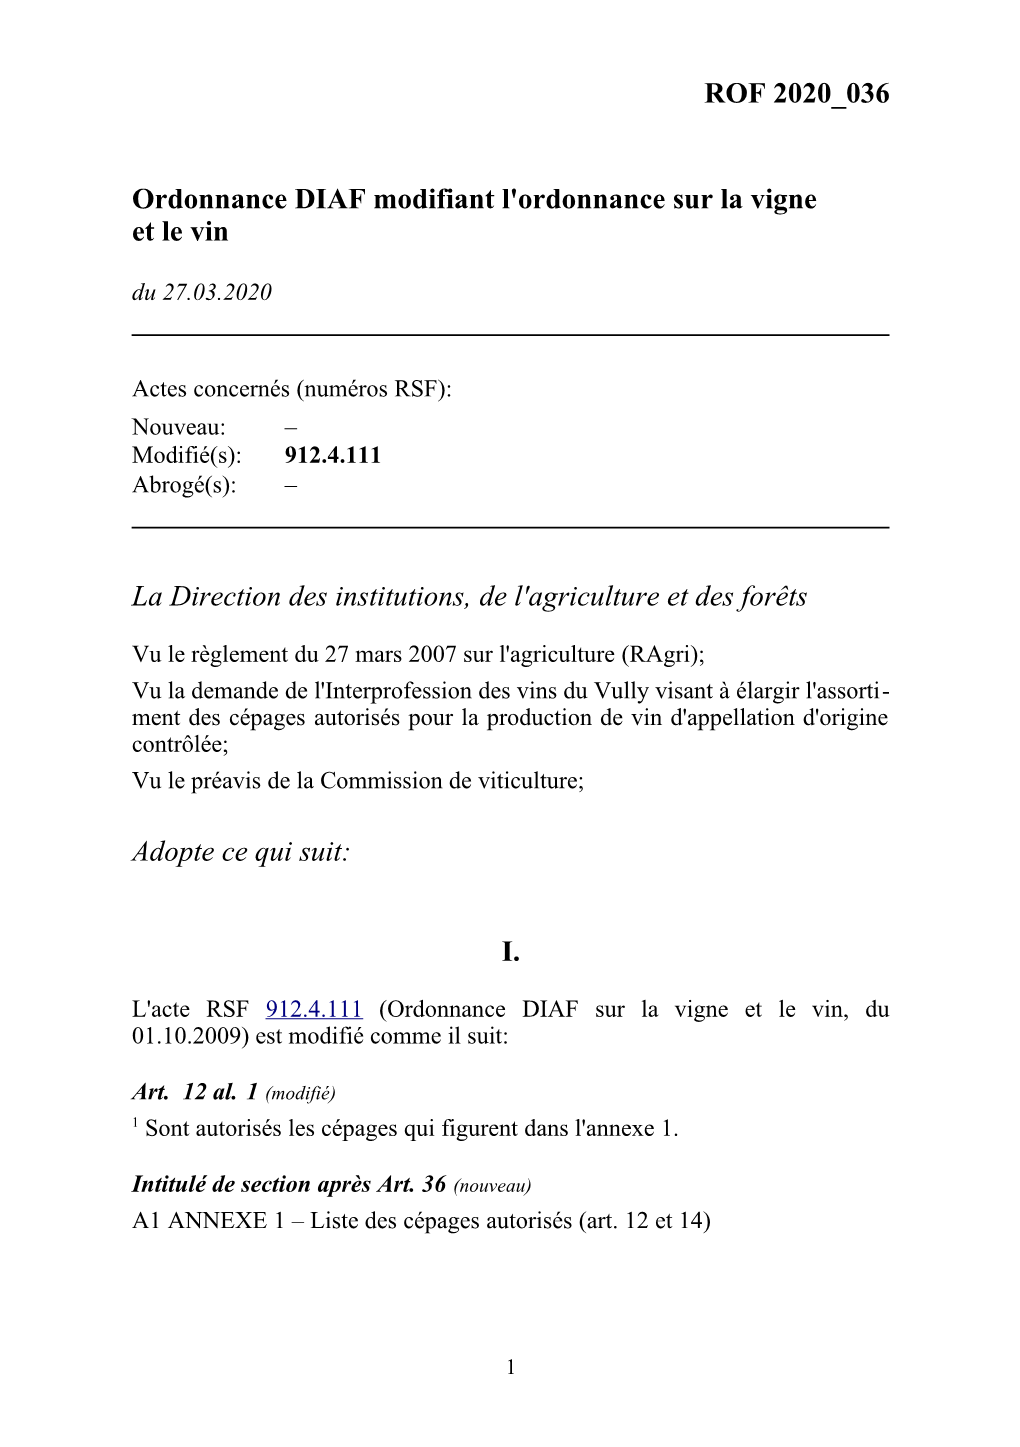 ROF 2020 036 Ordonnance DIAF Modifiant L'ordonnance Sur La Vigne